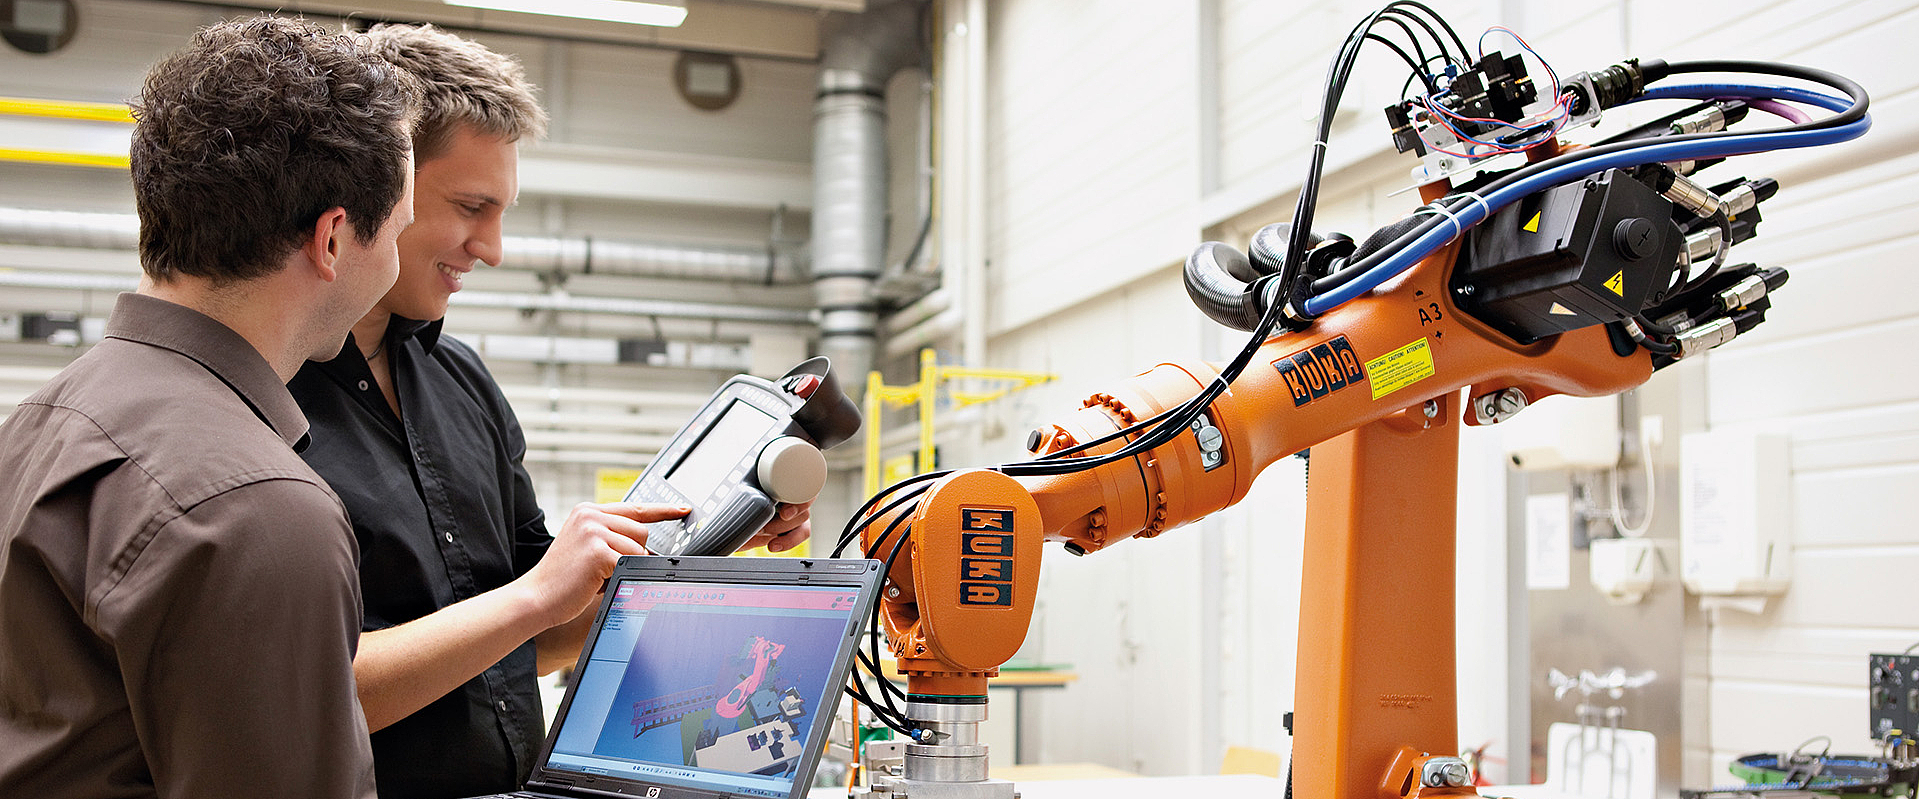 Zwei Maschinenbaustudierende stehen mit Tablet vor einem orangenen KUKA-Roboter